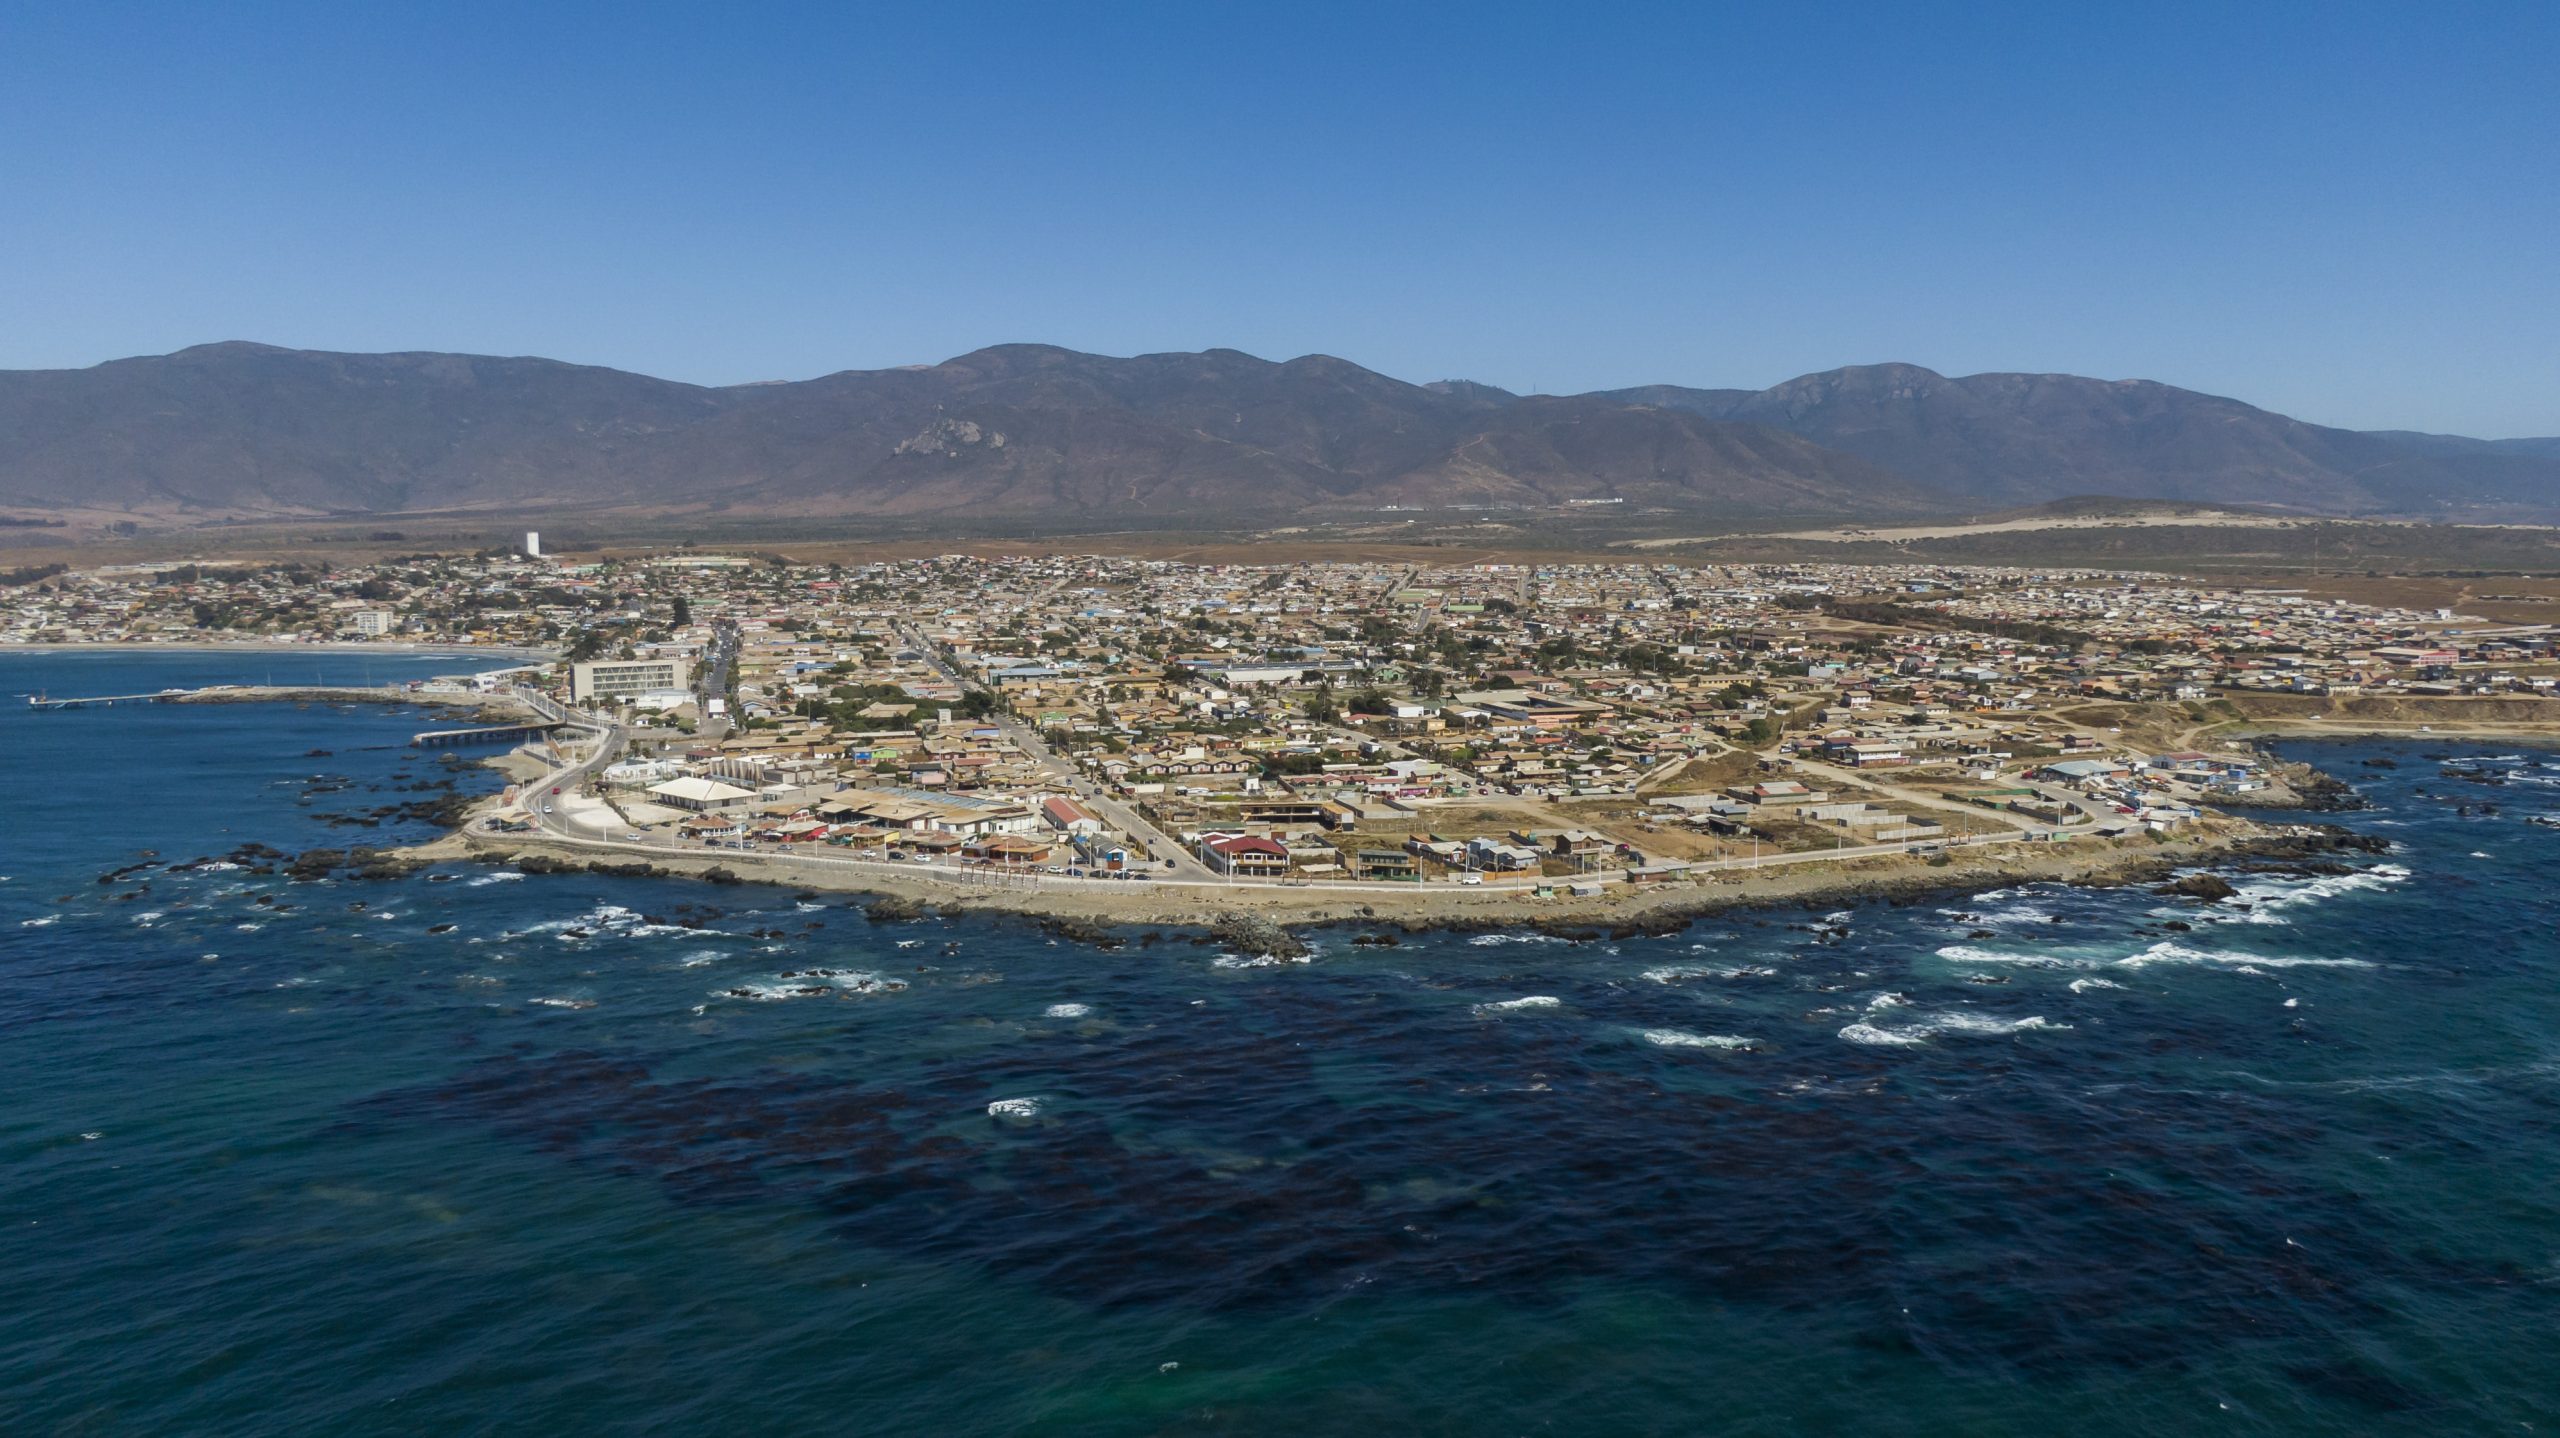 Laboratorio busca fortalecer investigación científica entre las regiones de Atacama y Valparaíso